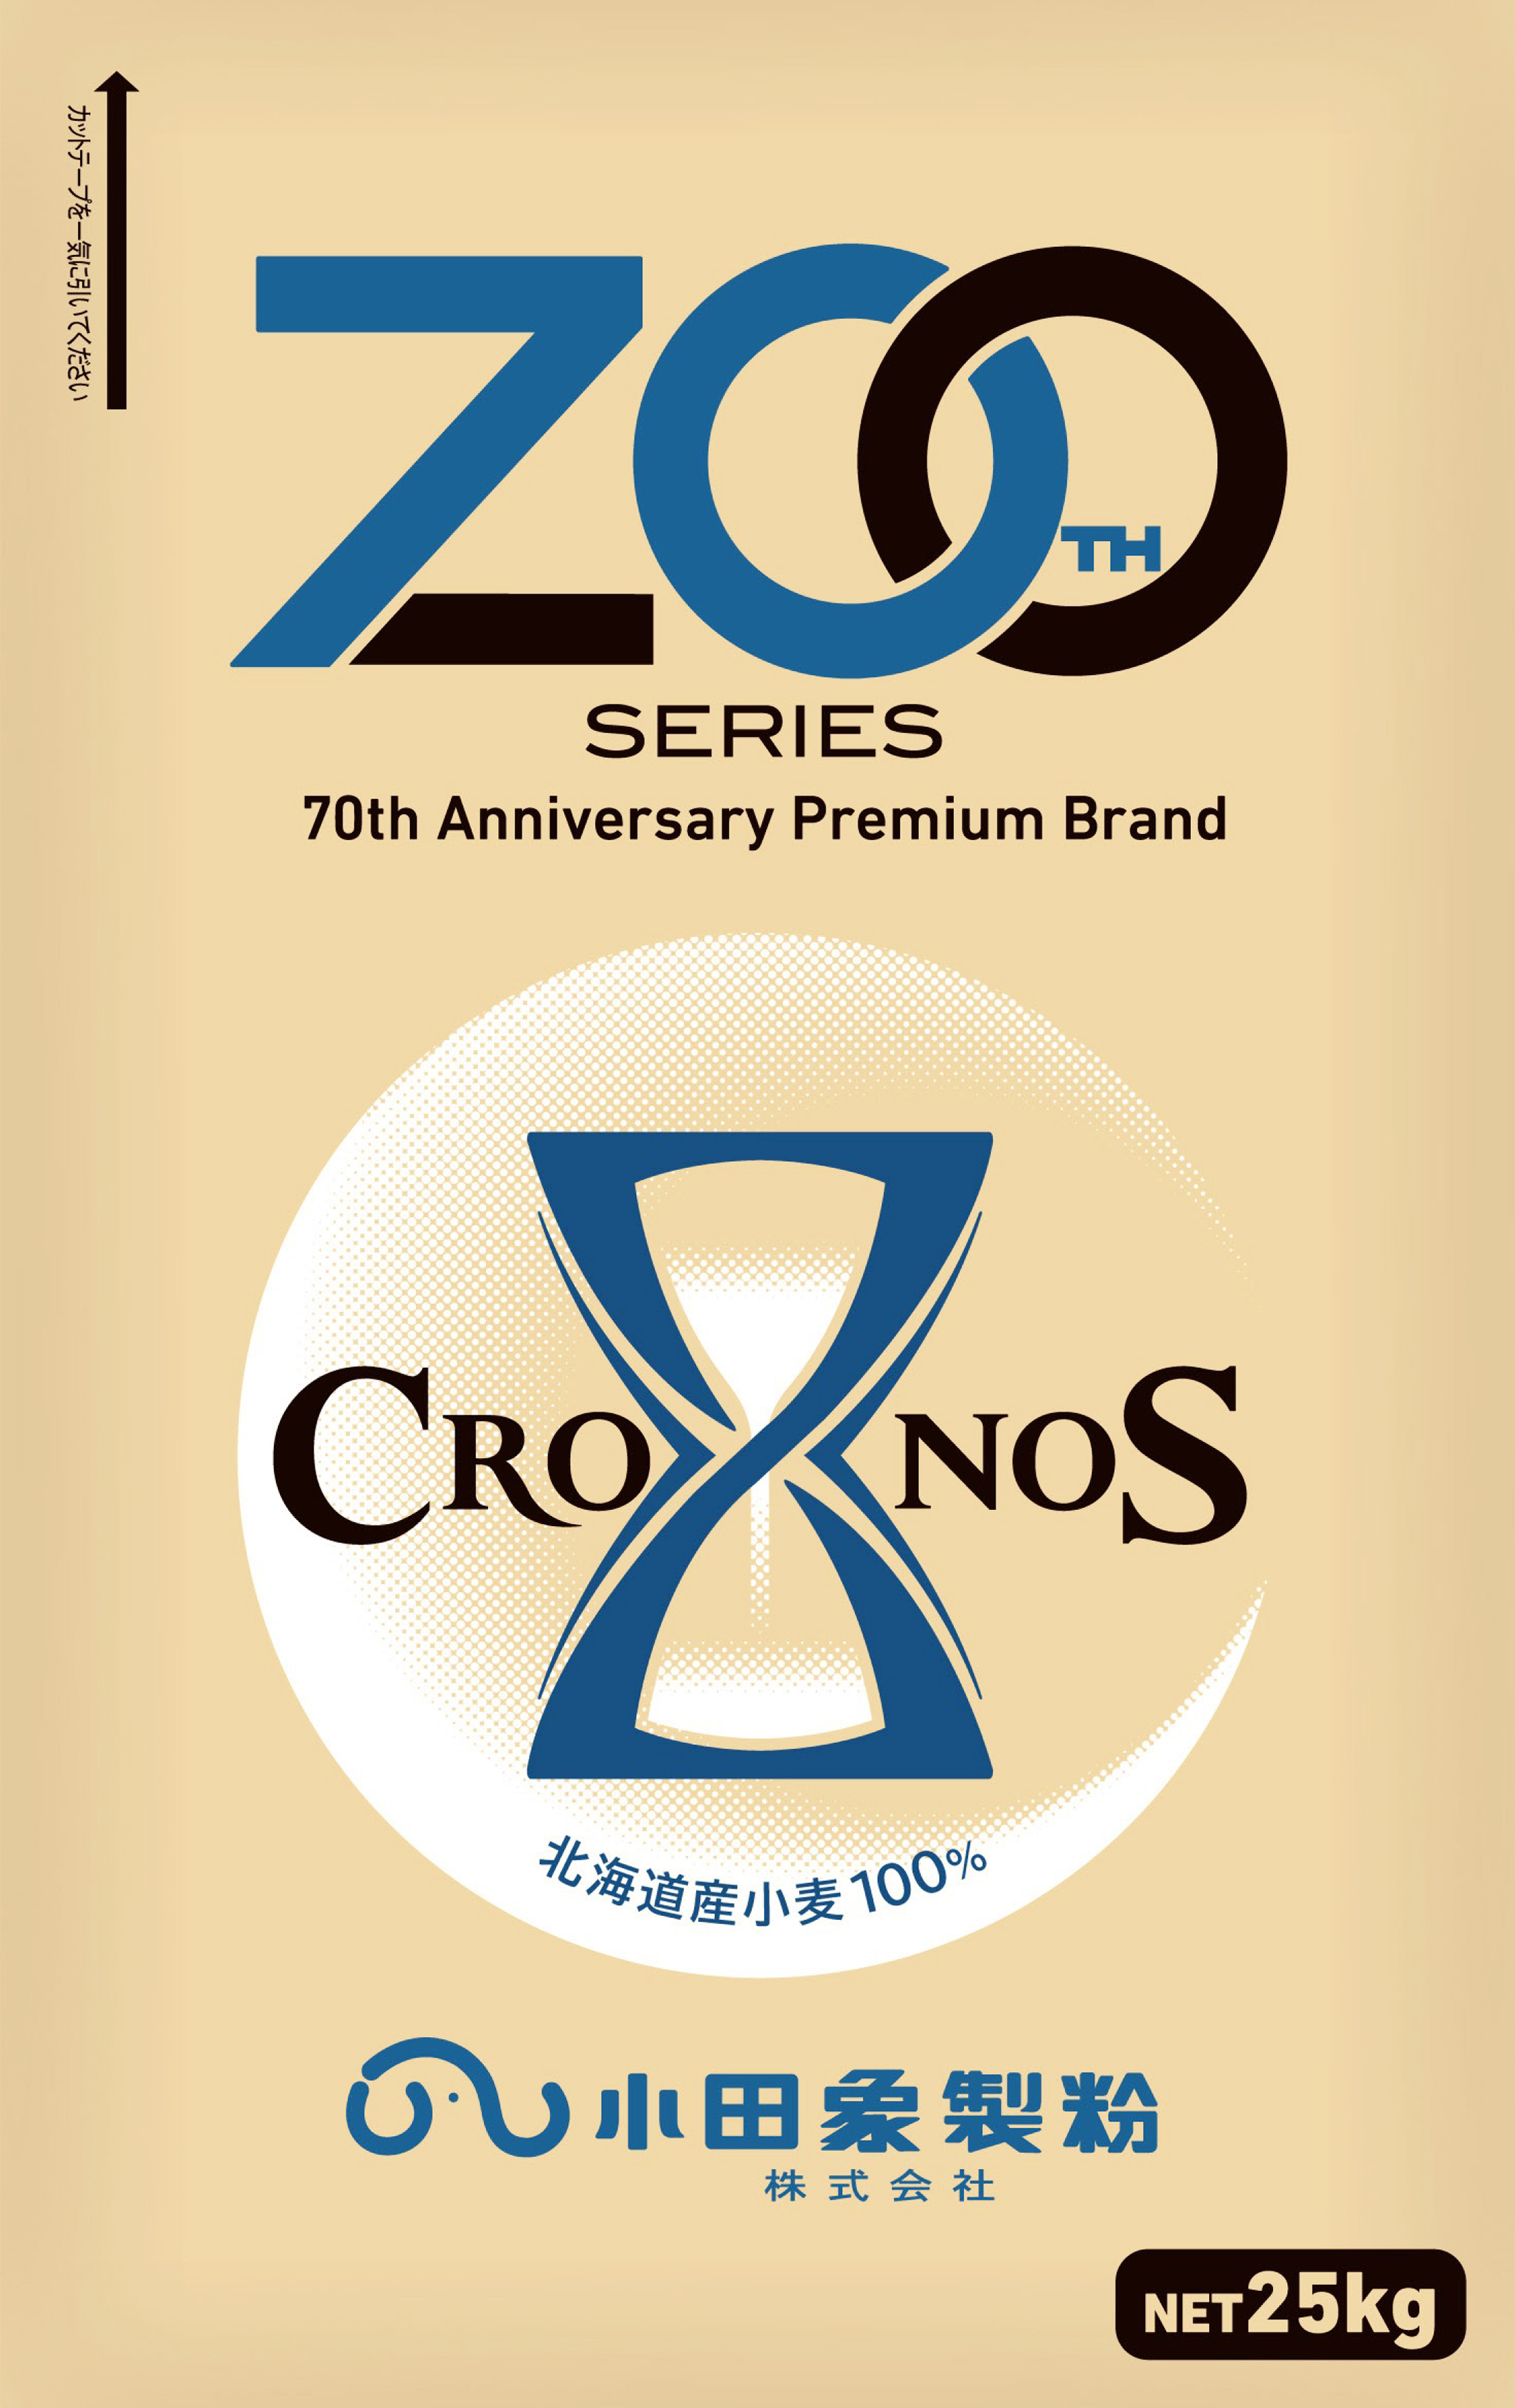 小田象製粉株式会社、微粉砕加工により機能性を付与した
北海道産小麦粉「CRONOS(クロノス)」を発売